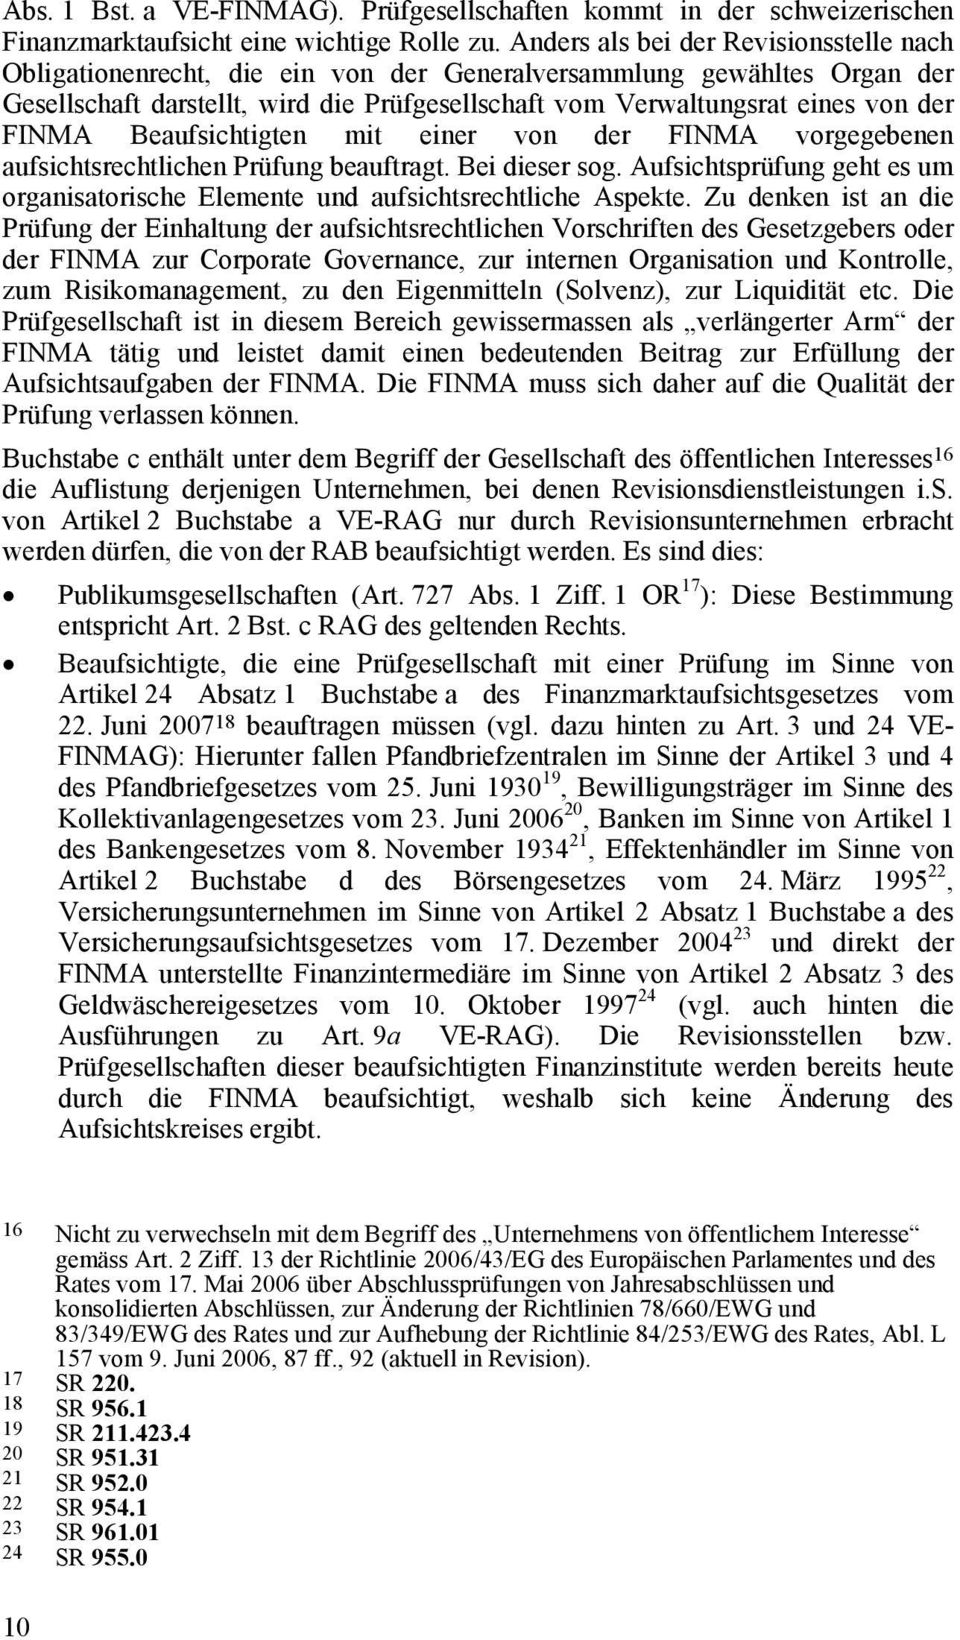 FINMA Beaufsichtigten mit einer von der FINMA vorgegebenen aufsichtsrechtlichen Prüfung beauftragt. Bei dieser sog.